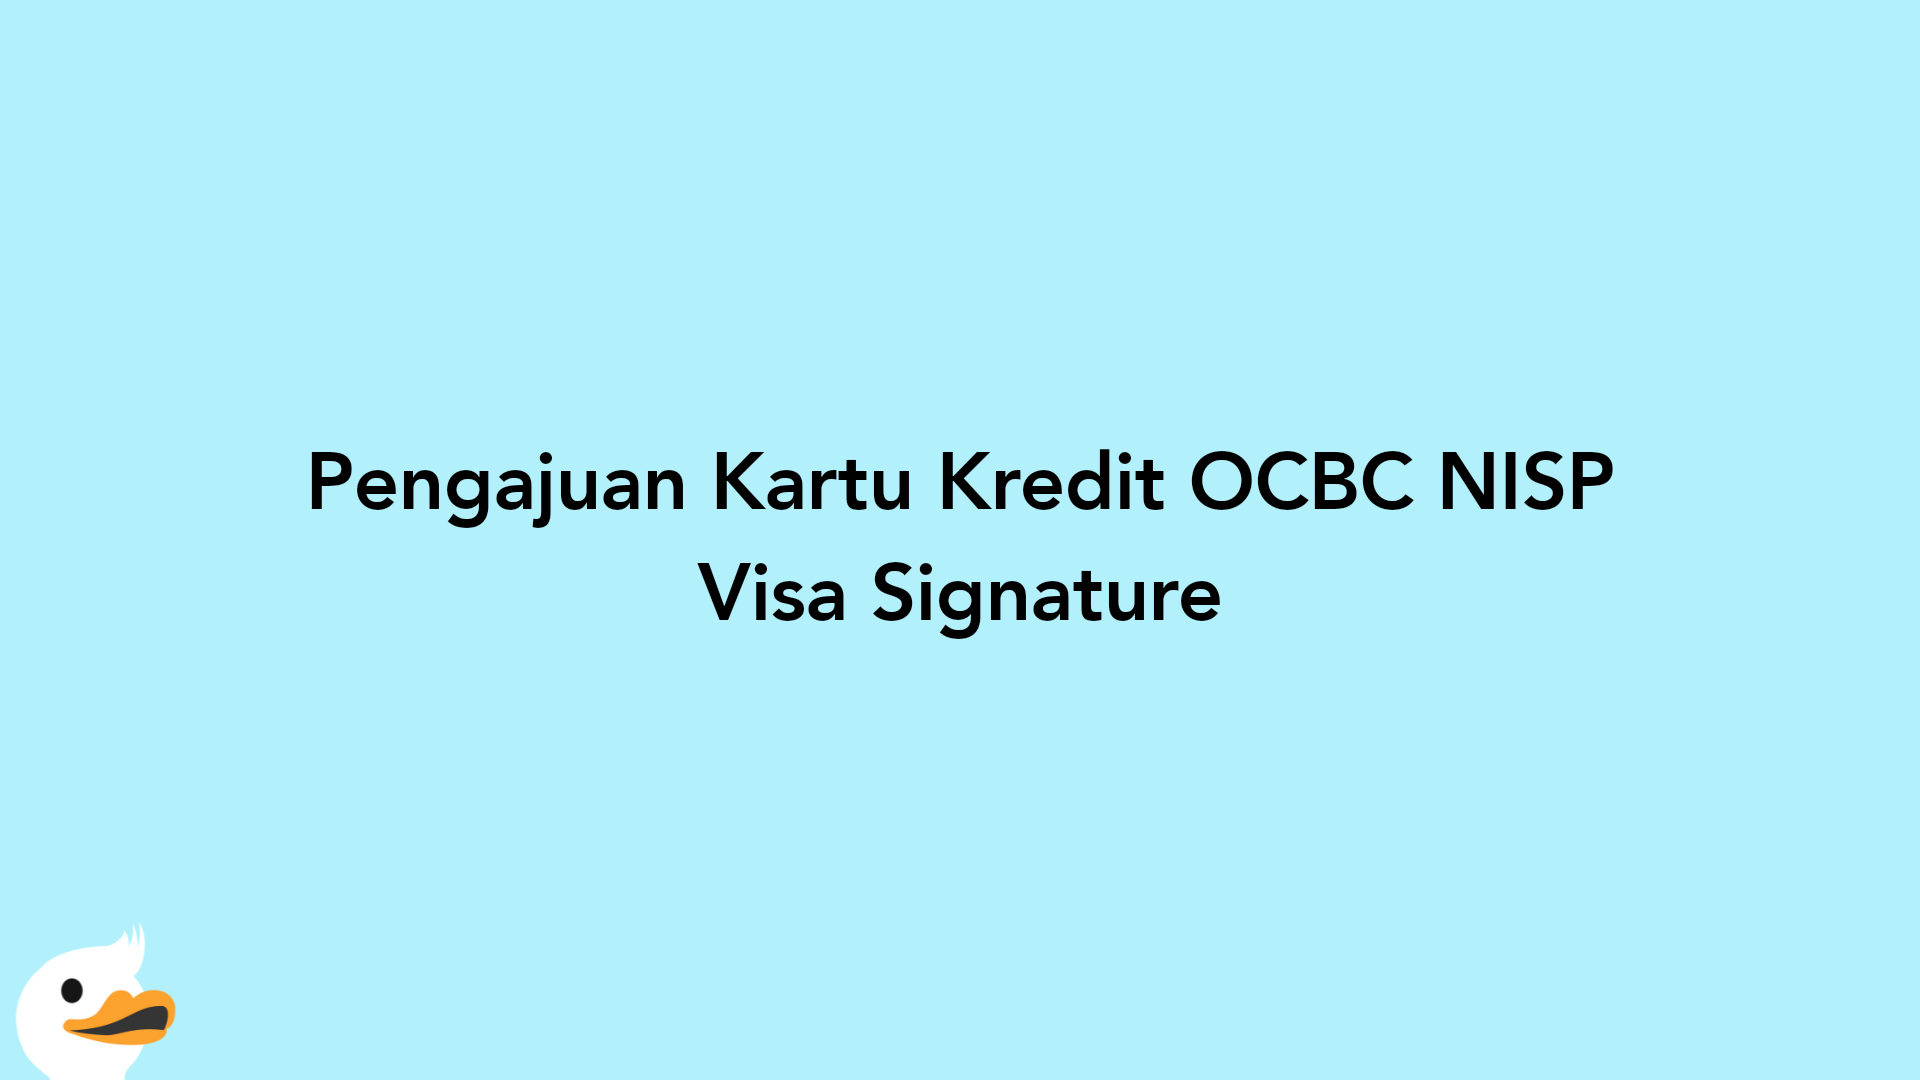 Pengajuan Kartu Kredit OCBC NISP Visa Signature